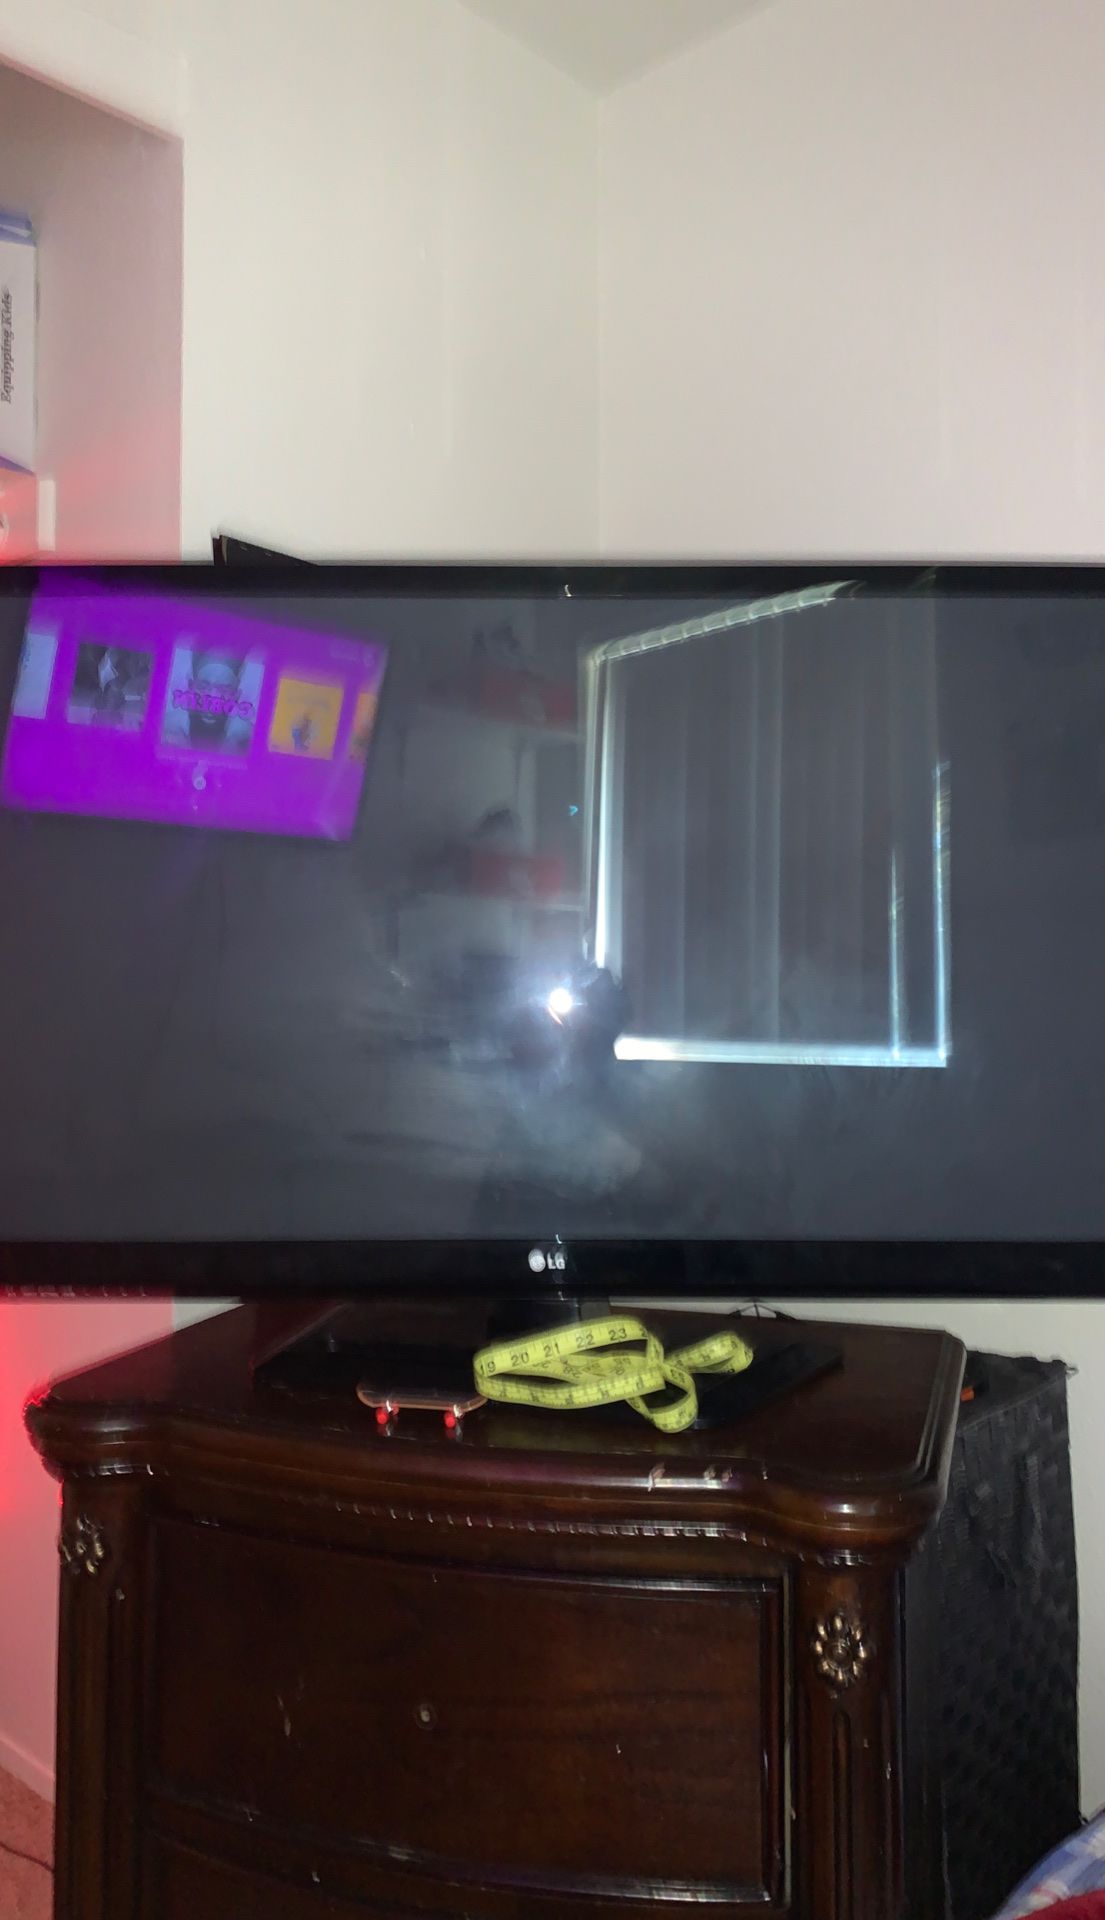 40 inch LG plasma TV